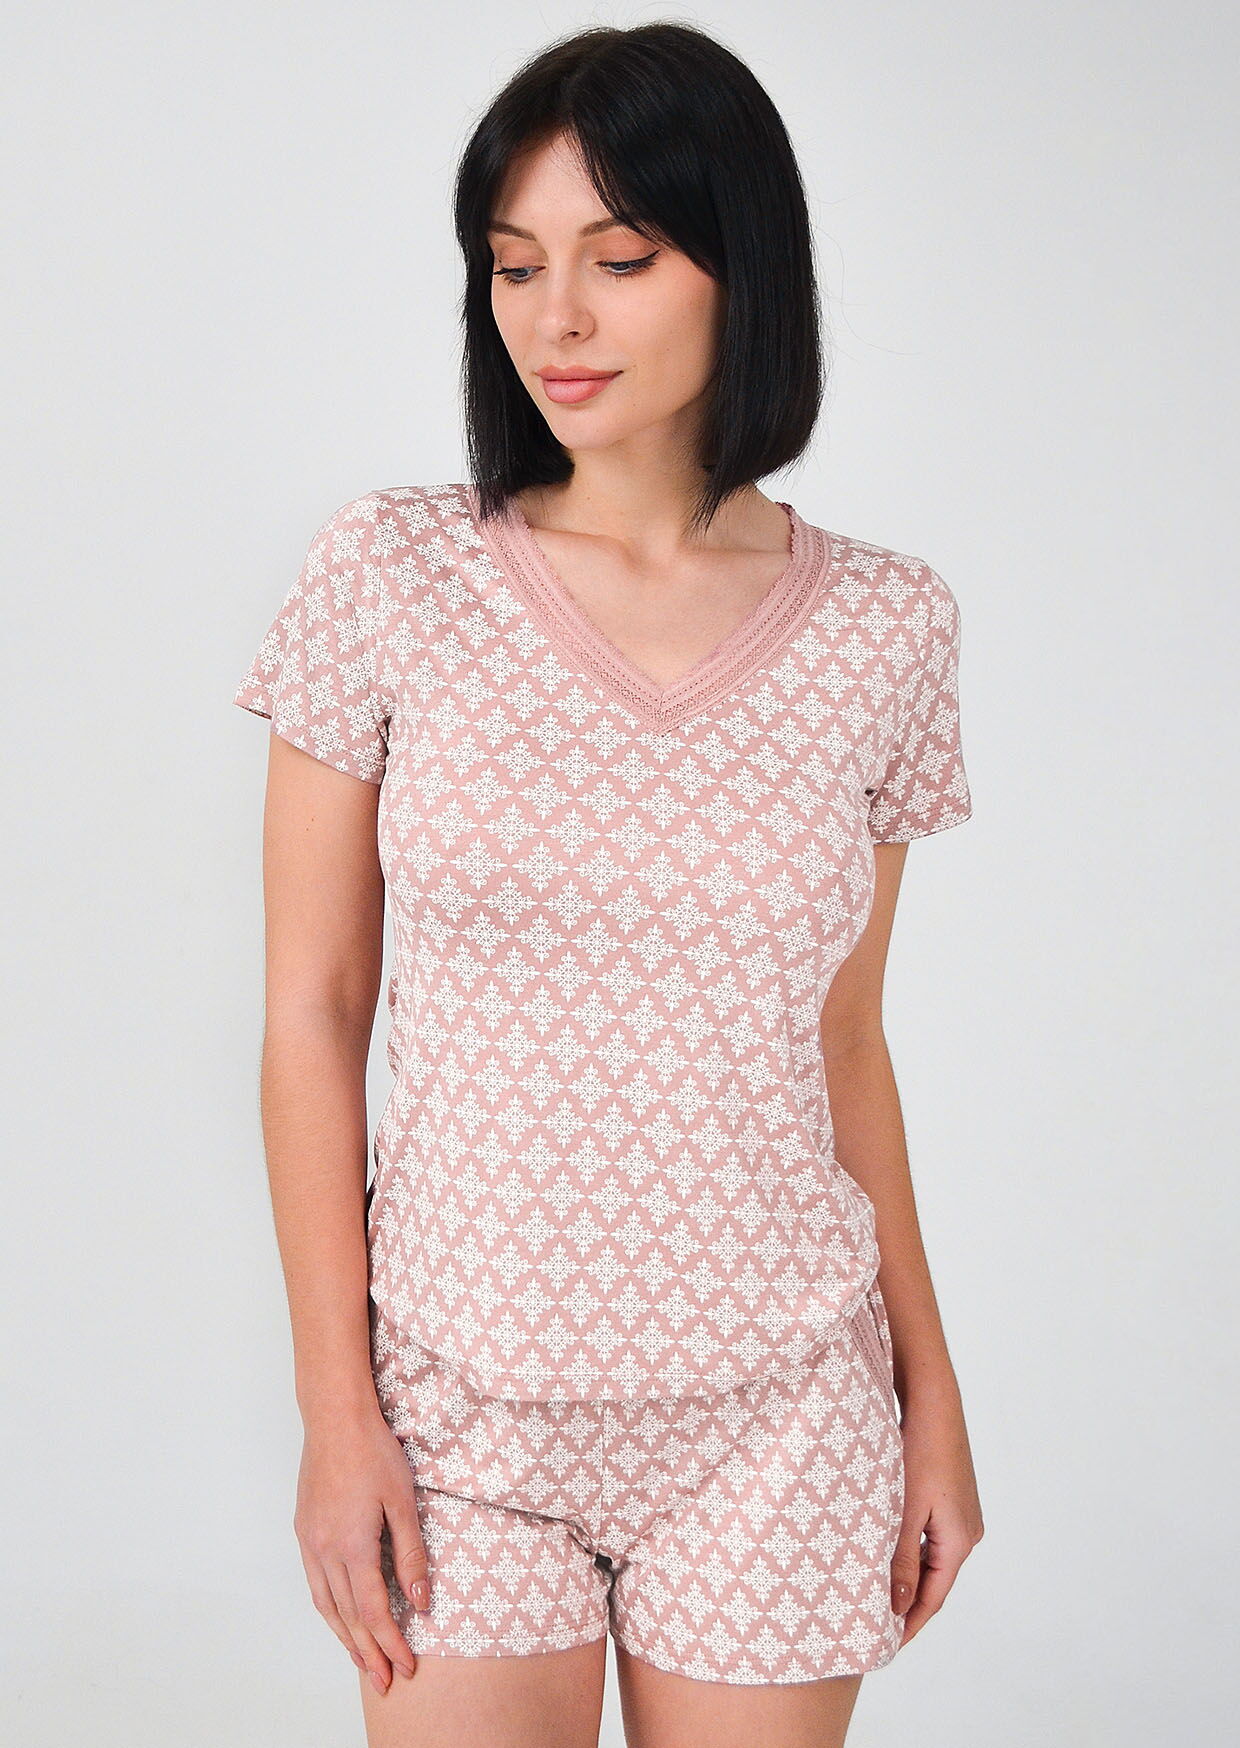 Пижама женская футболка и шорты Роксана Venera розовая 1180-60215 - цена